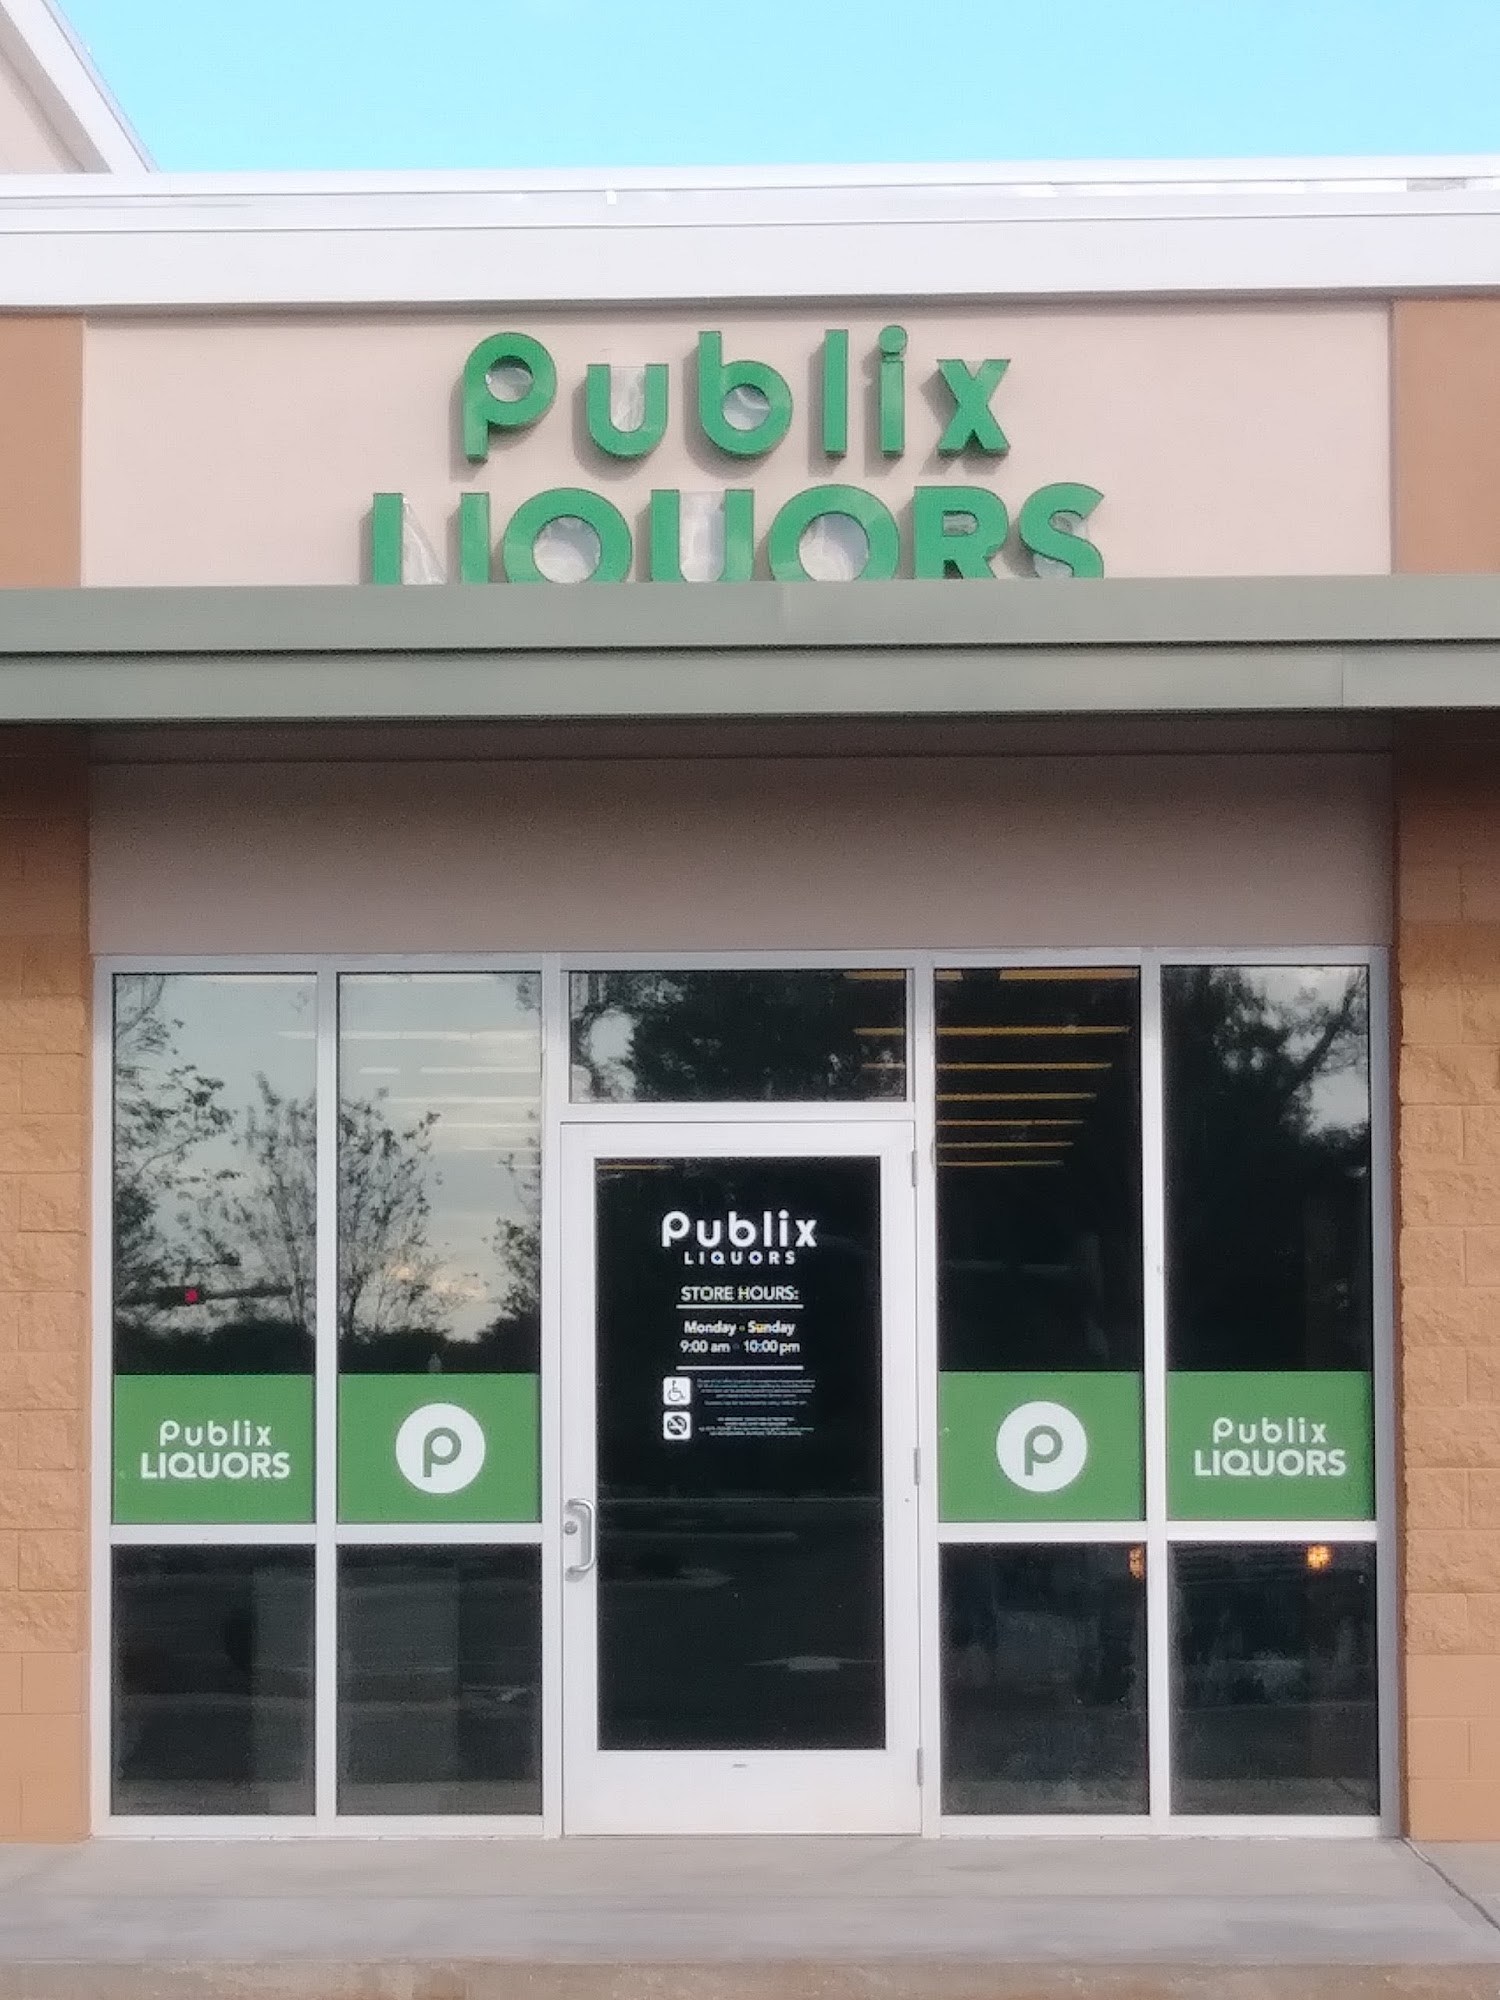 Publix Liquors at Five Points Shopping Center